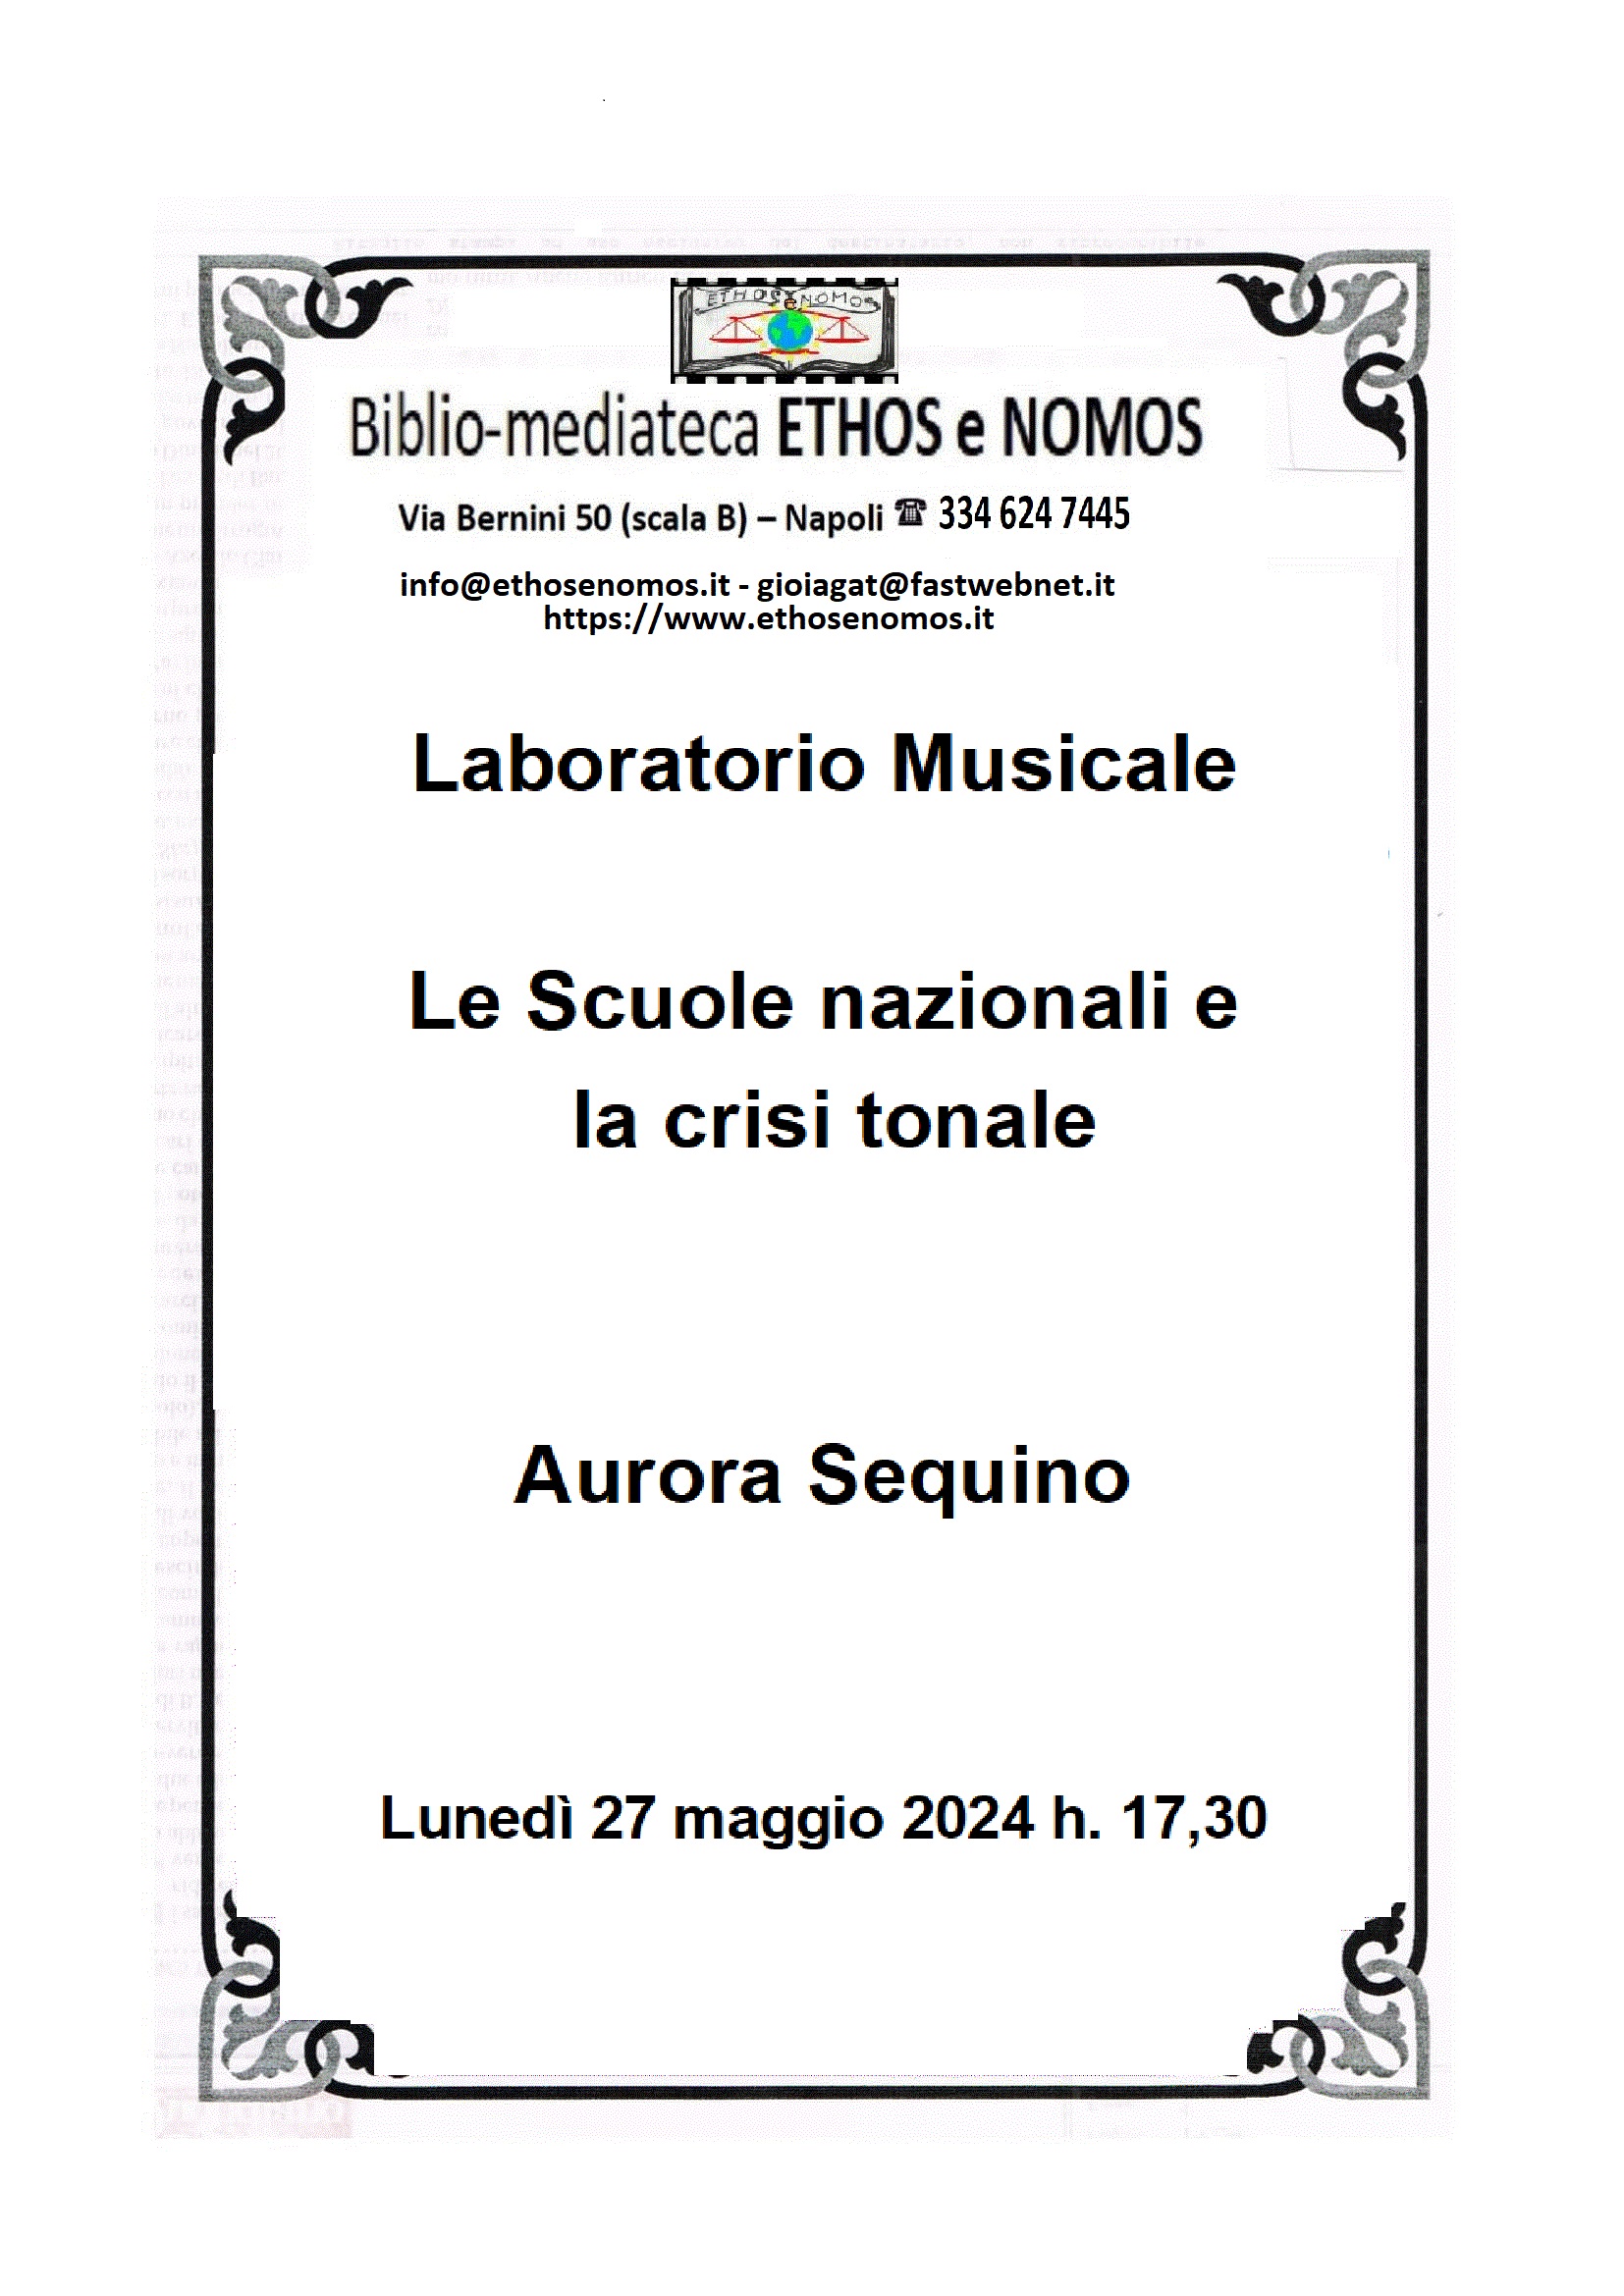 Aurora Sequino - Laboratorio musicale: le scuole nazionali e la crisi tonale